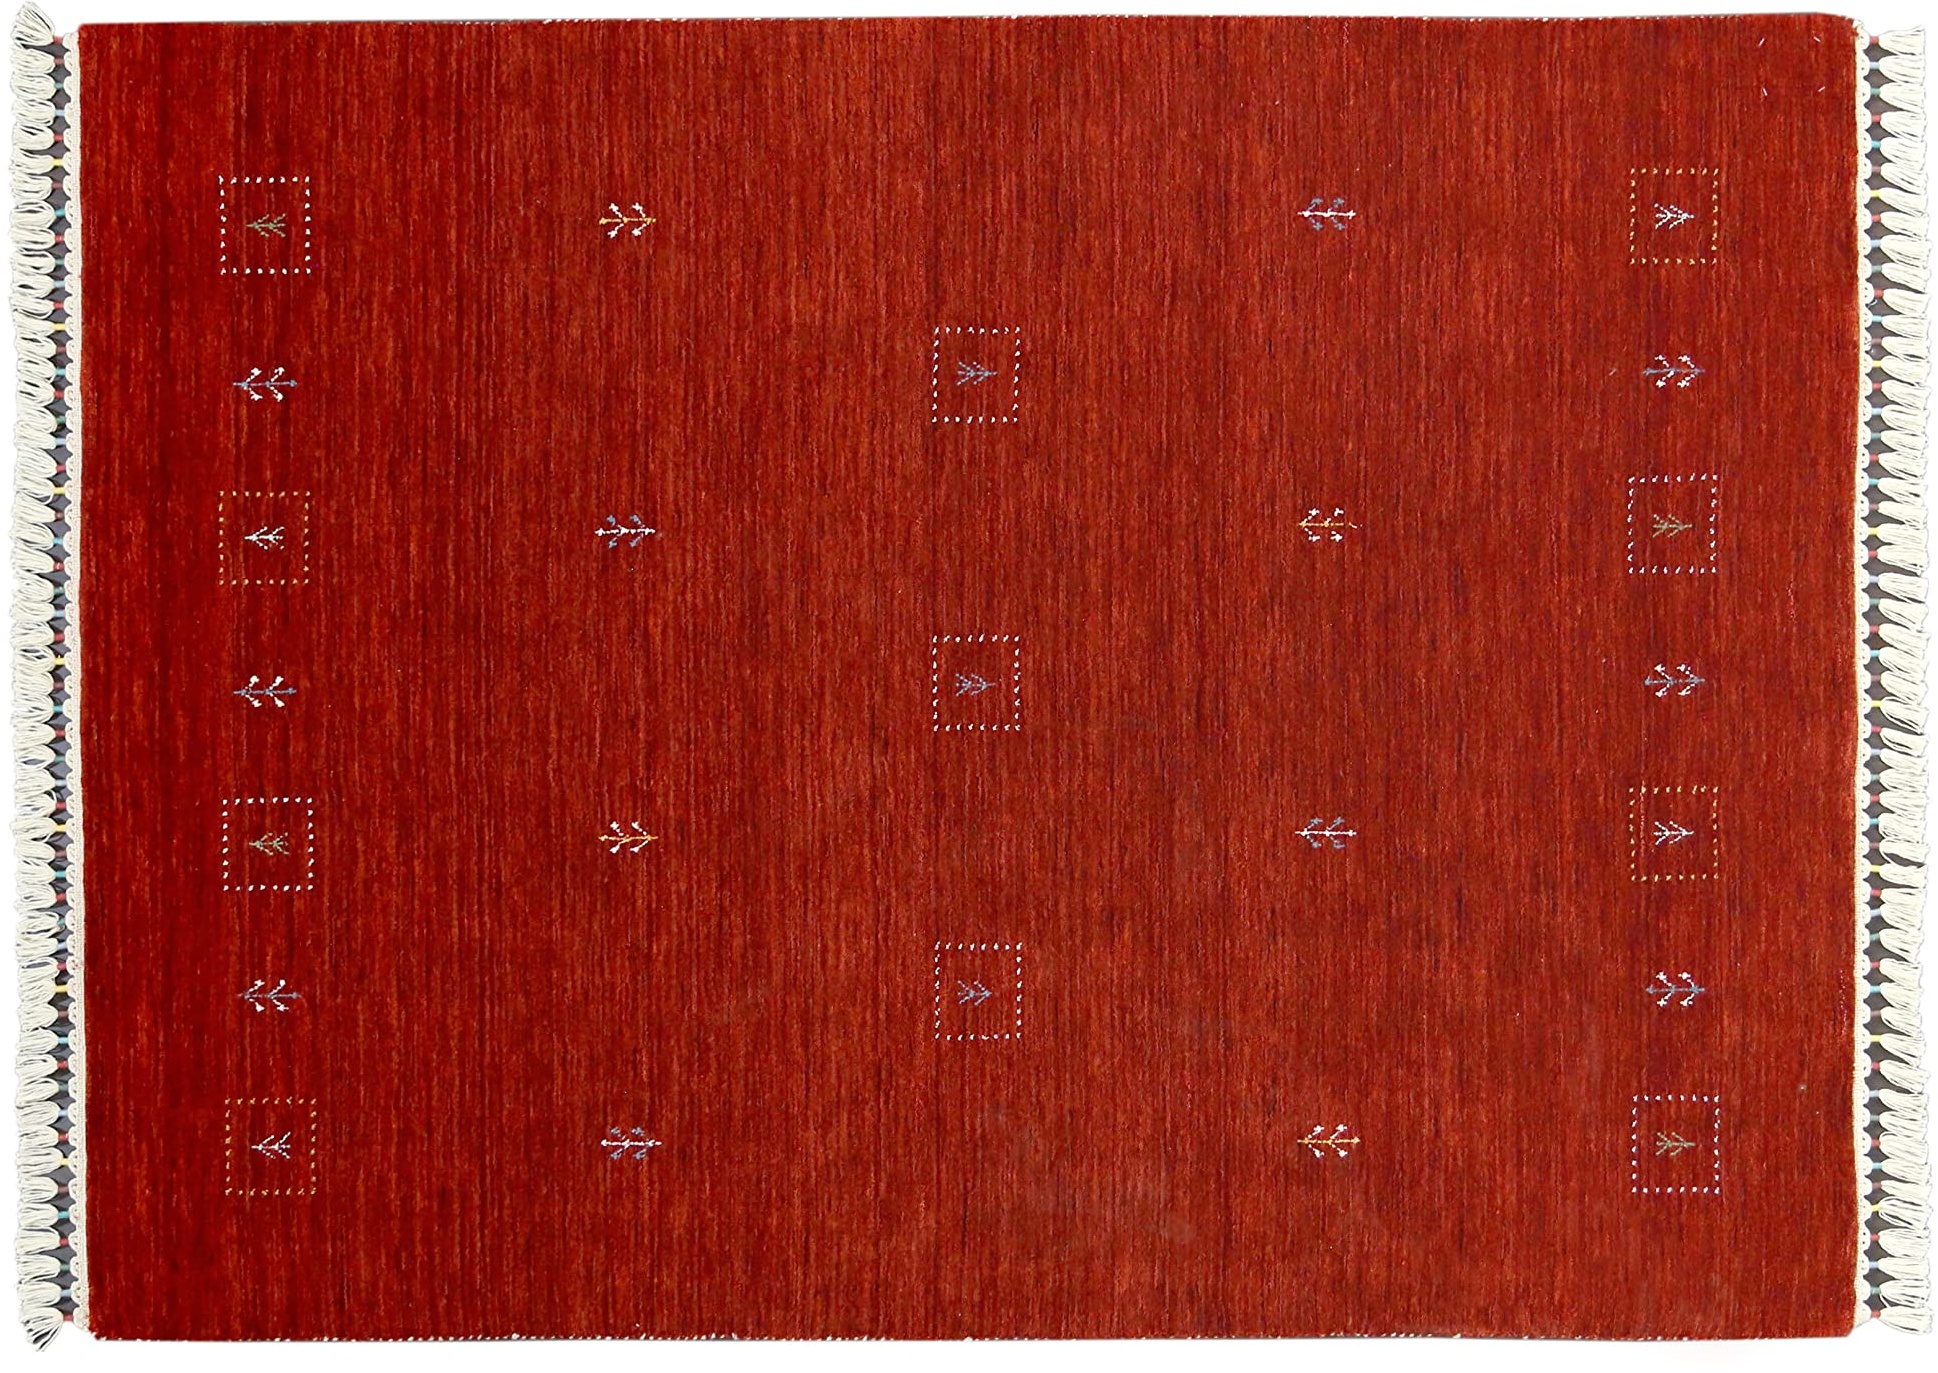 Moderner Teppich Lorry Buff GABBEH Home & Living 230 x 160 cm aus pflanzlicher Wolle in Rot. Ideal für Jede Art von Umgebung: Küche, Bad, Wohnzimmer, Schlafzimmer